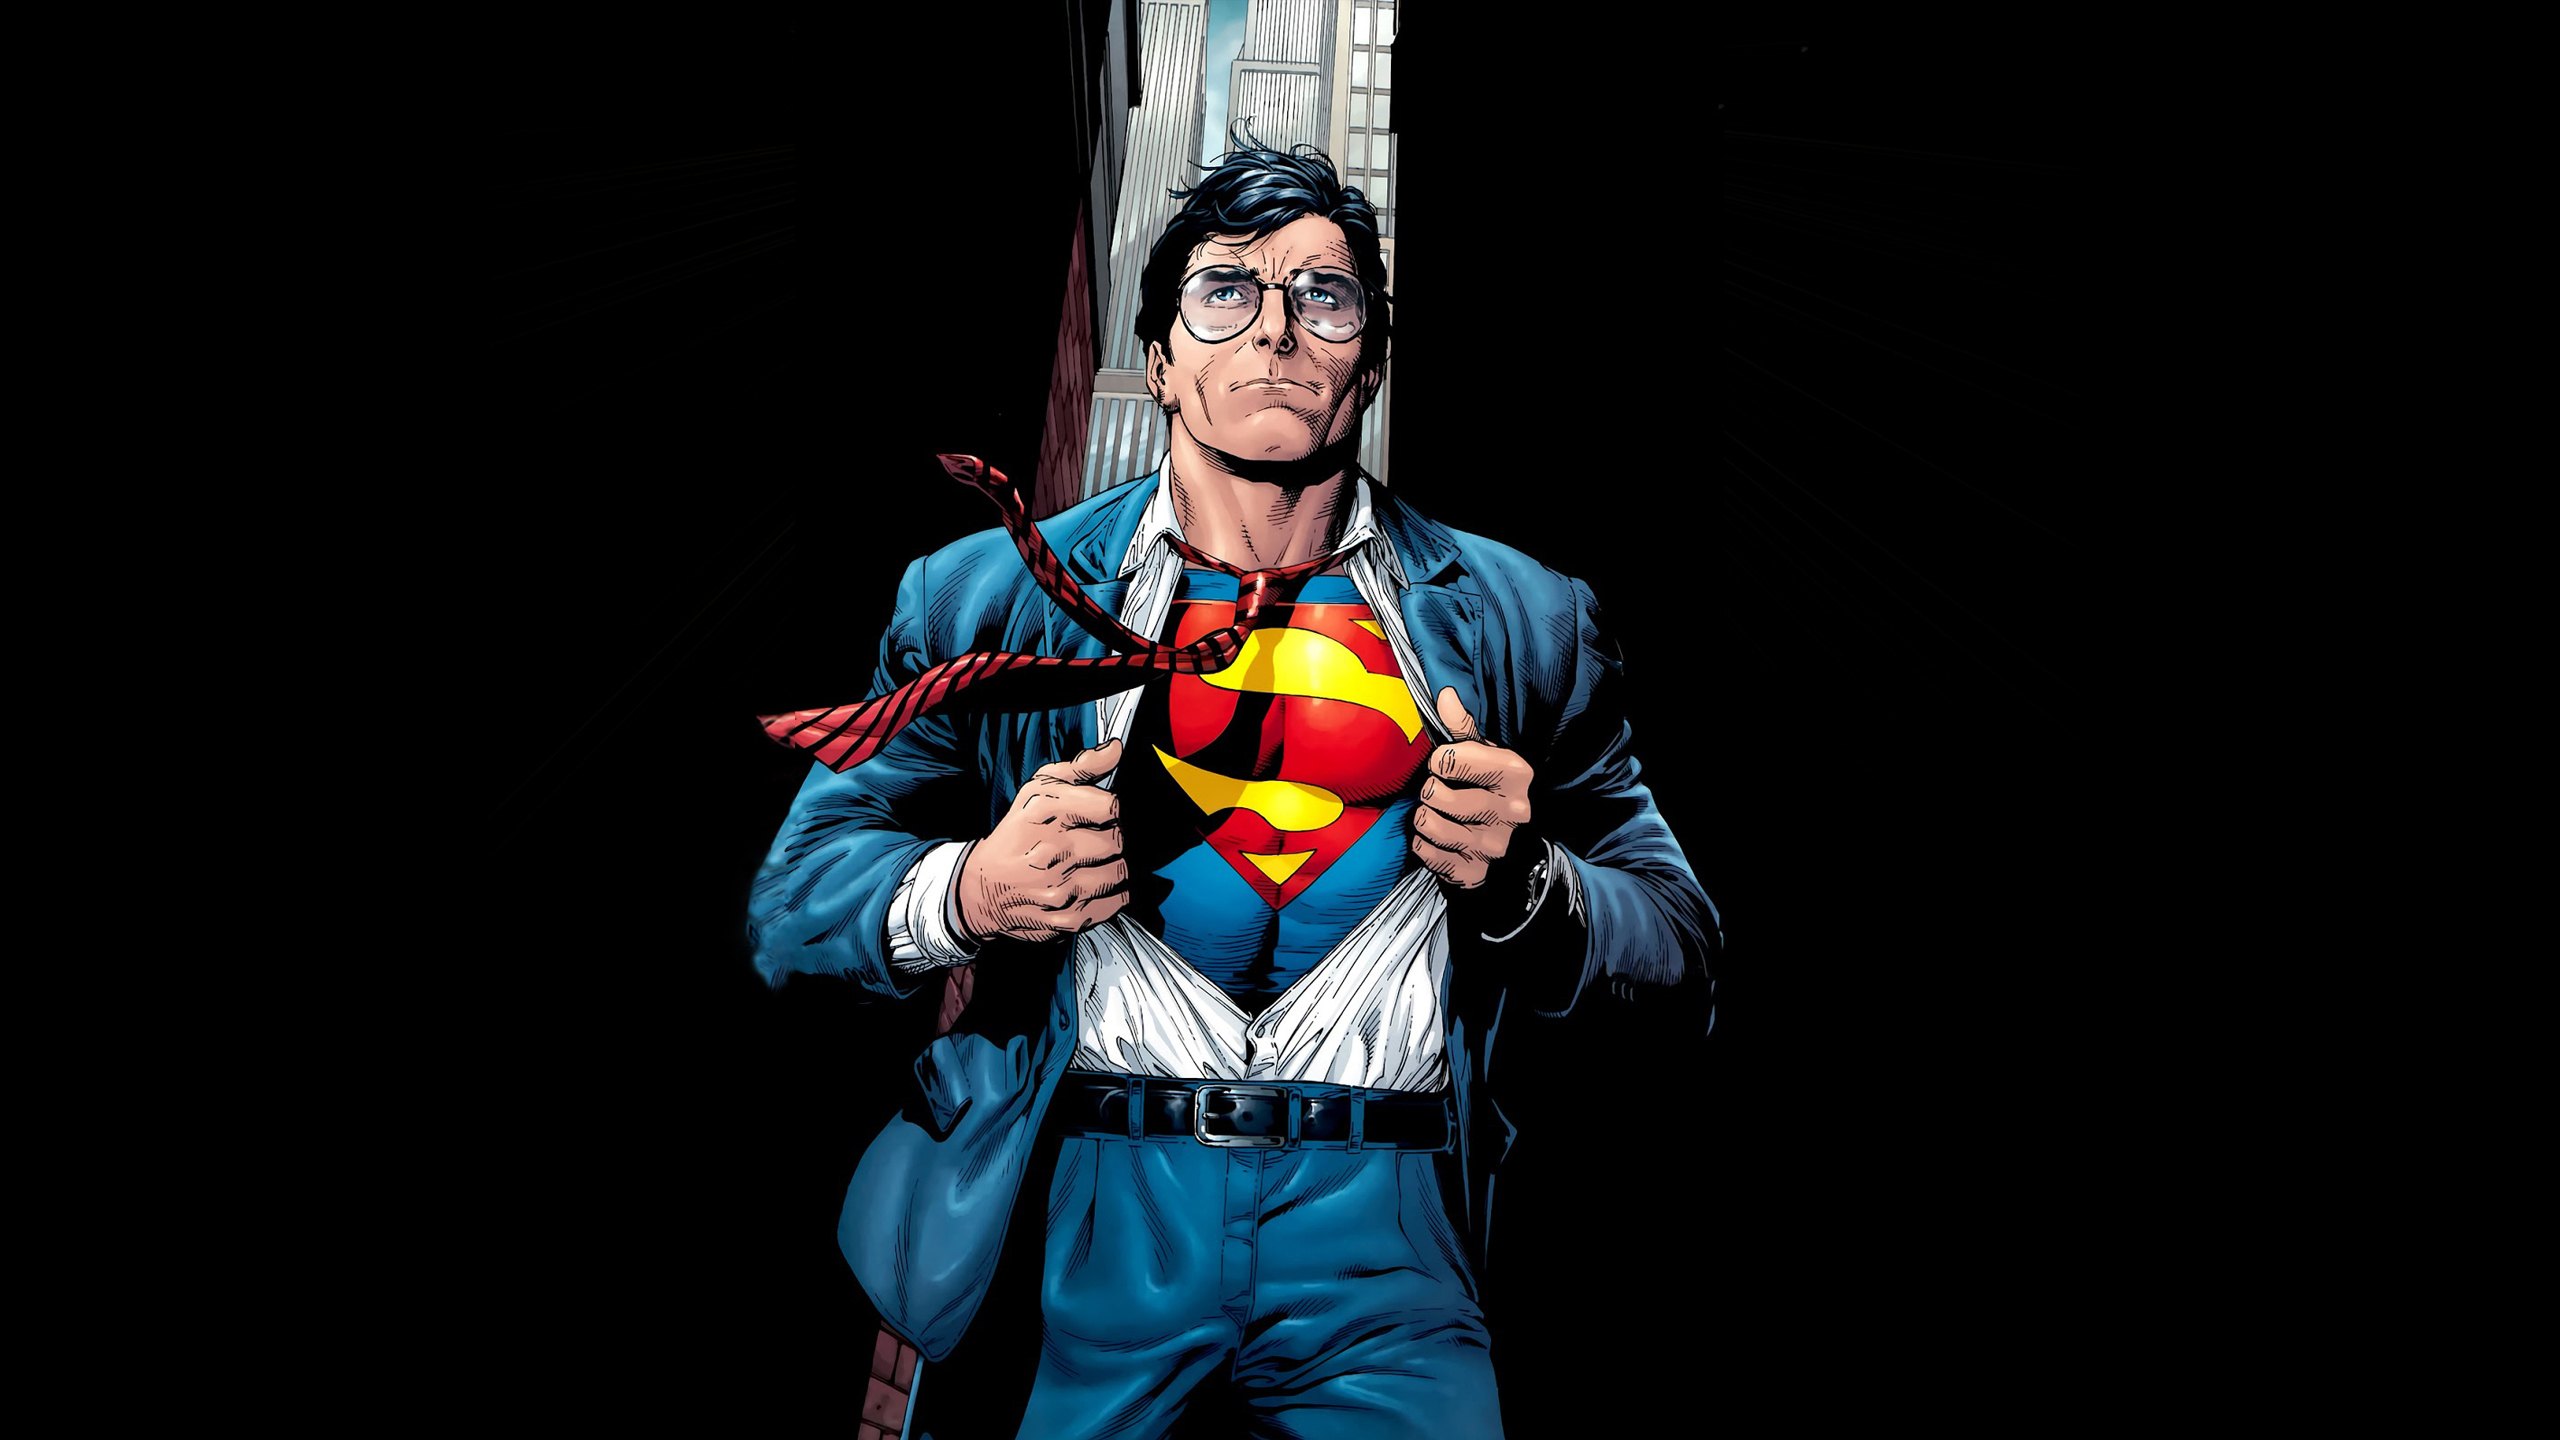 Superhero много денег. Кларк Кент Супермен. Супергерой Кларк Кент. Супермен журналист Кларк Кент. Кларк Кент Супермен в очках.